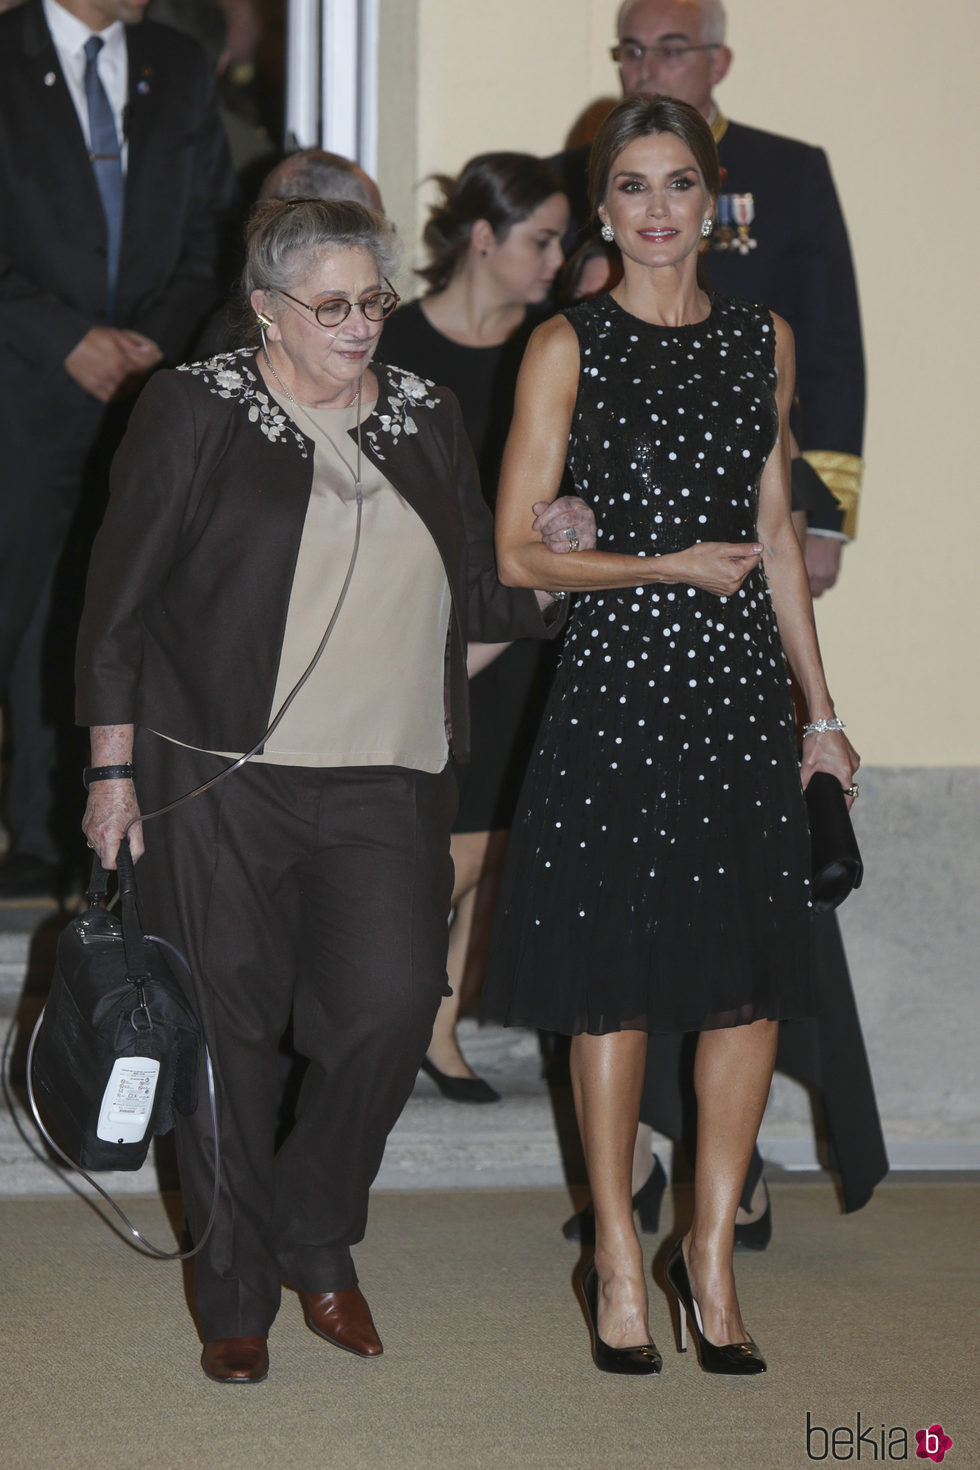 La Reina Letizia y Nechama Rivlin a su llegada a una cena en El Pardo